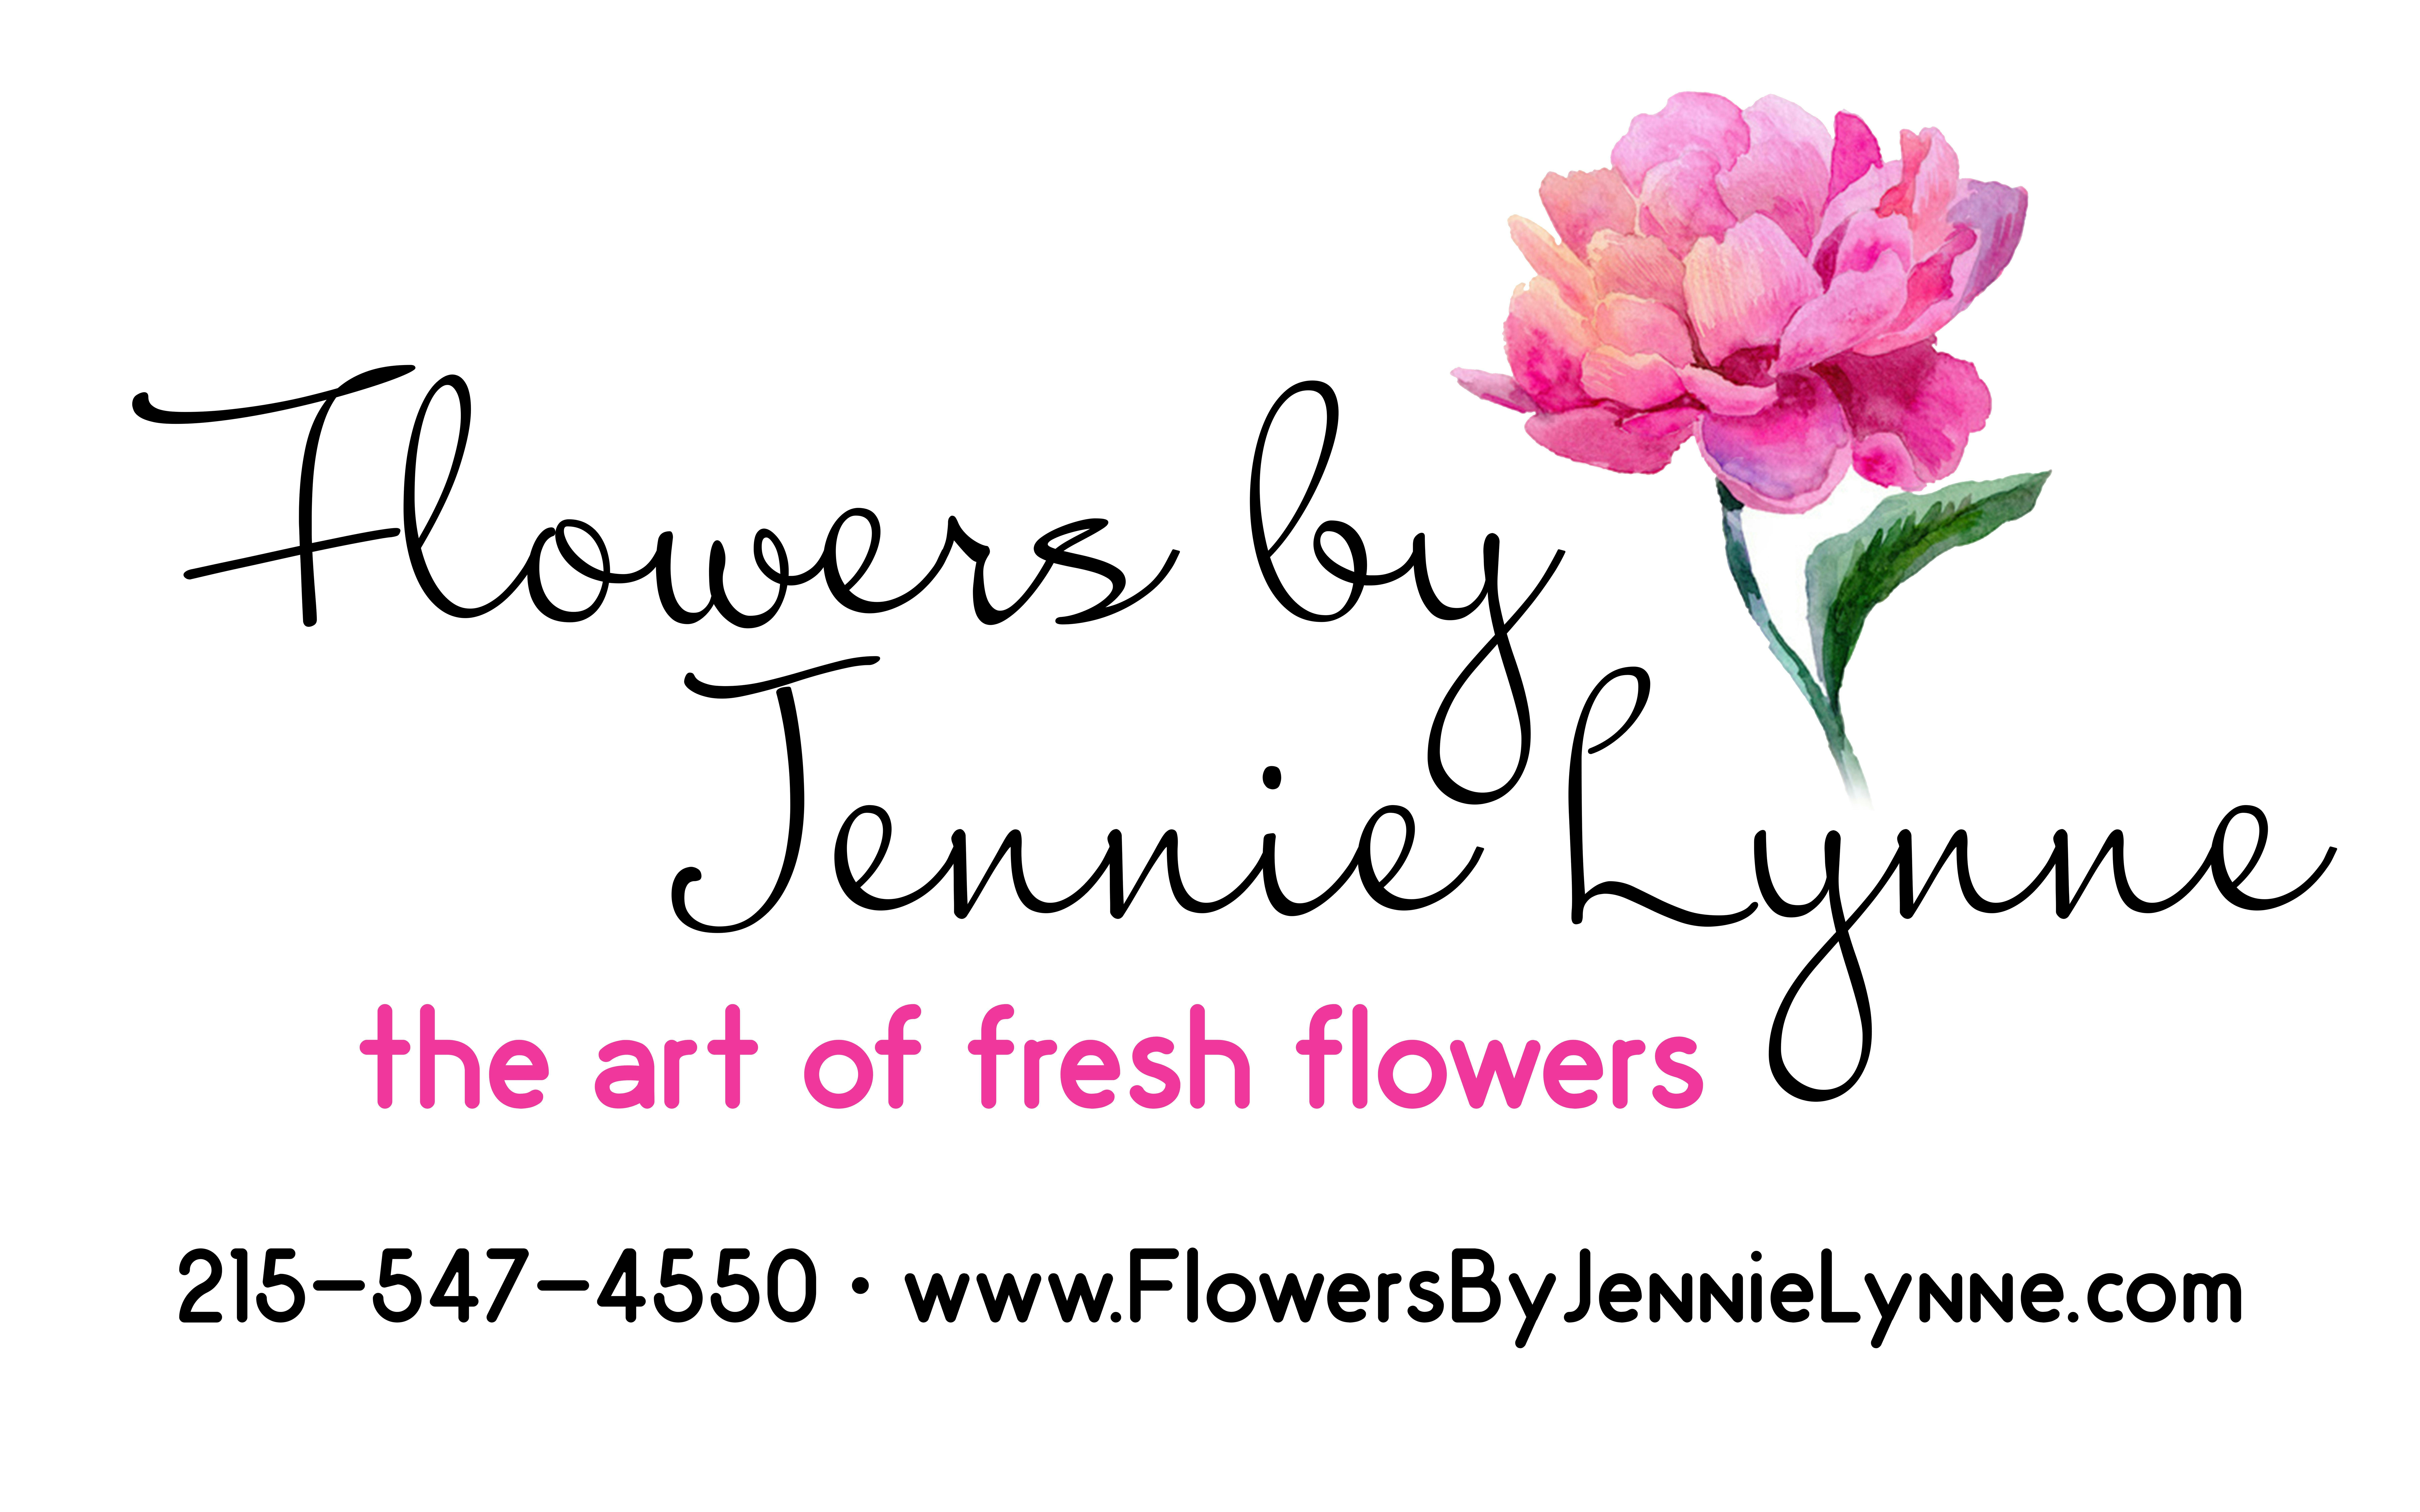 Flowers by Jenny Lynne